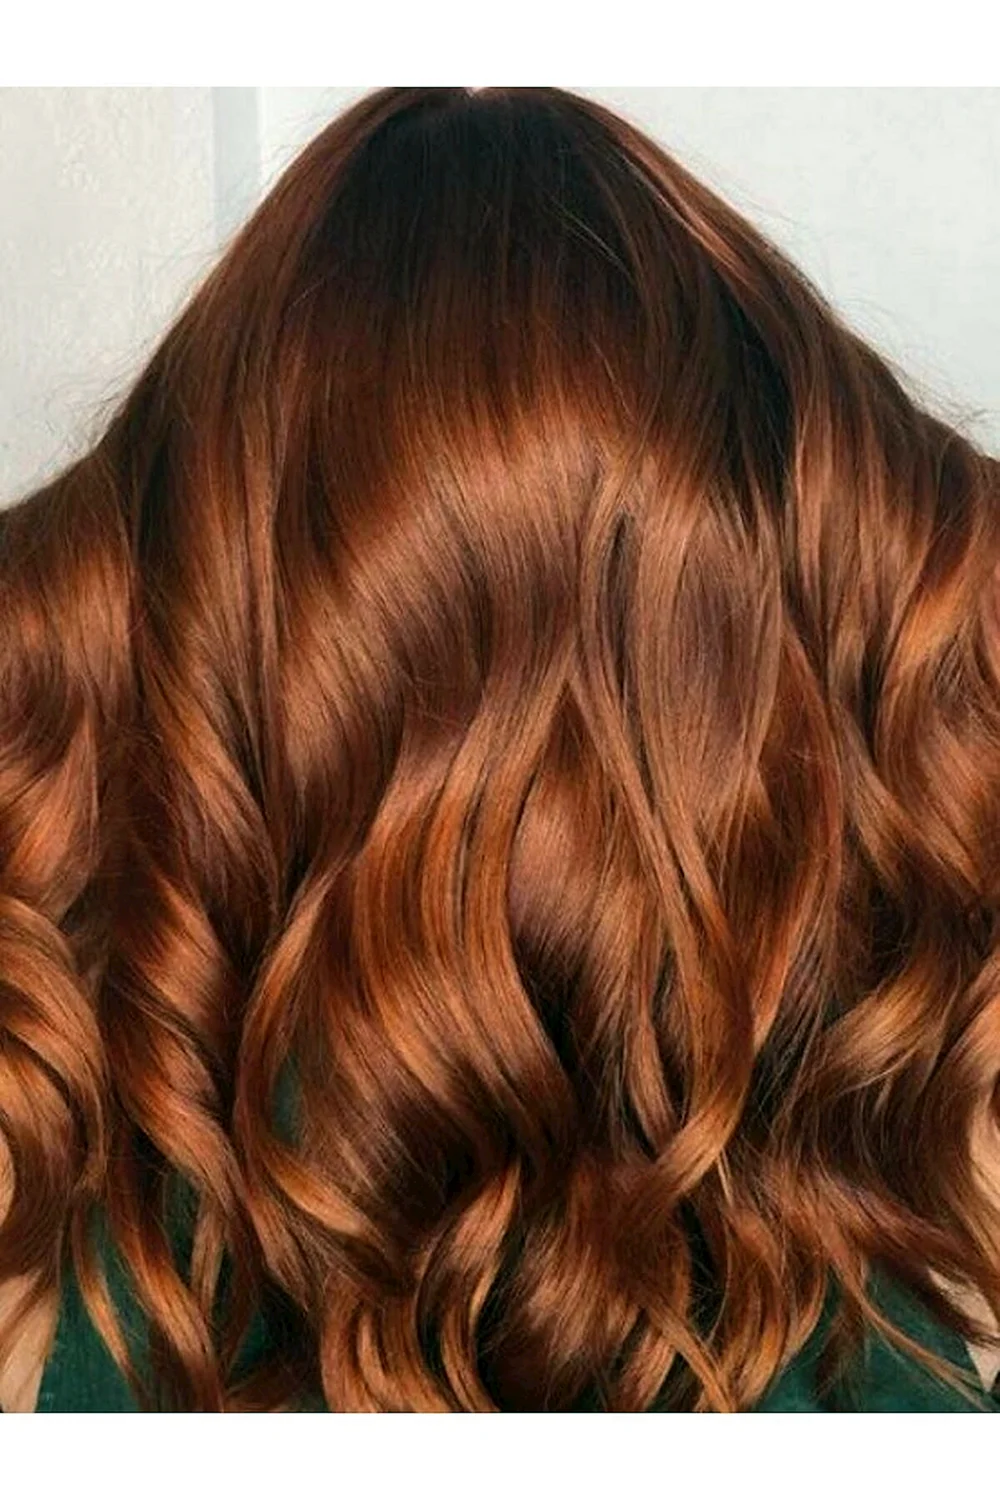 Copper hair Color